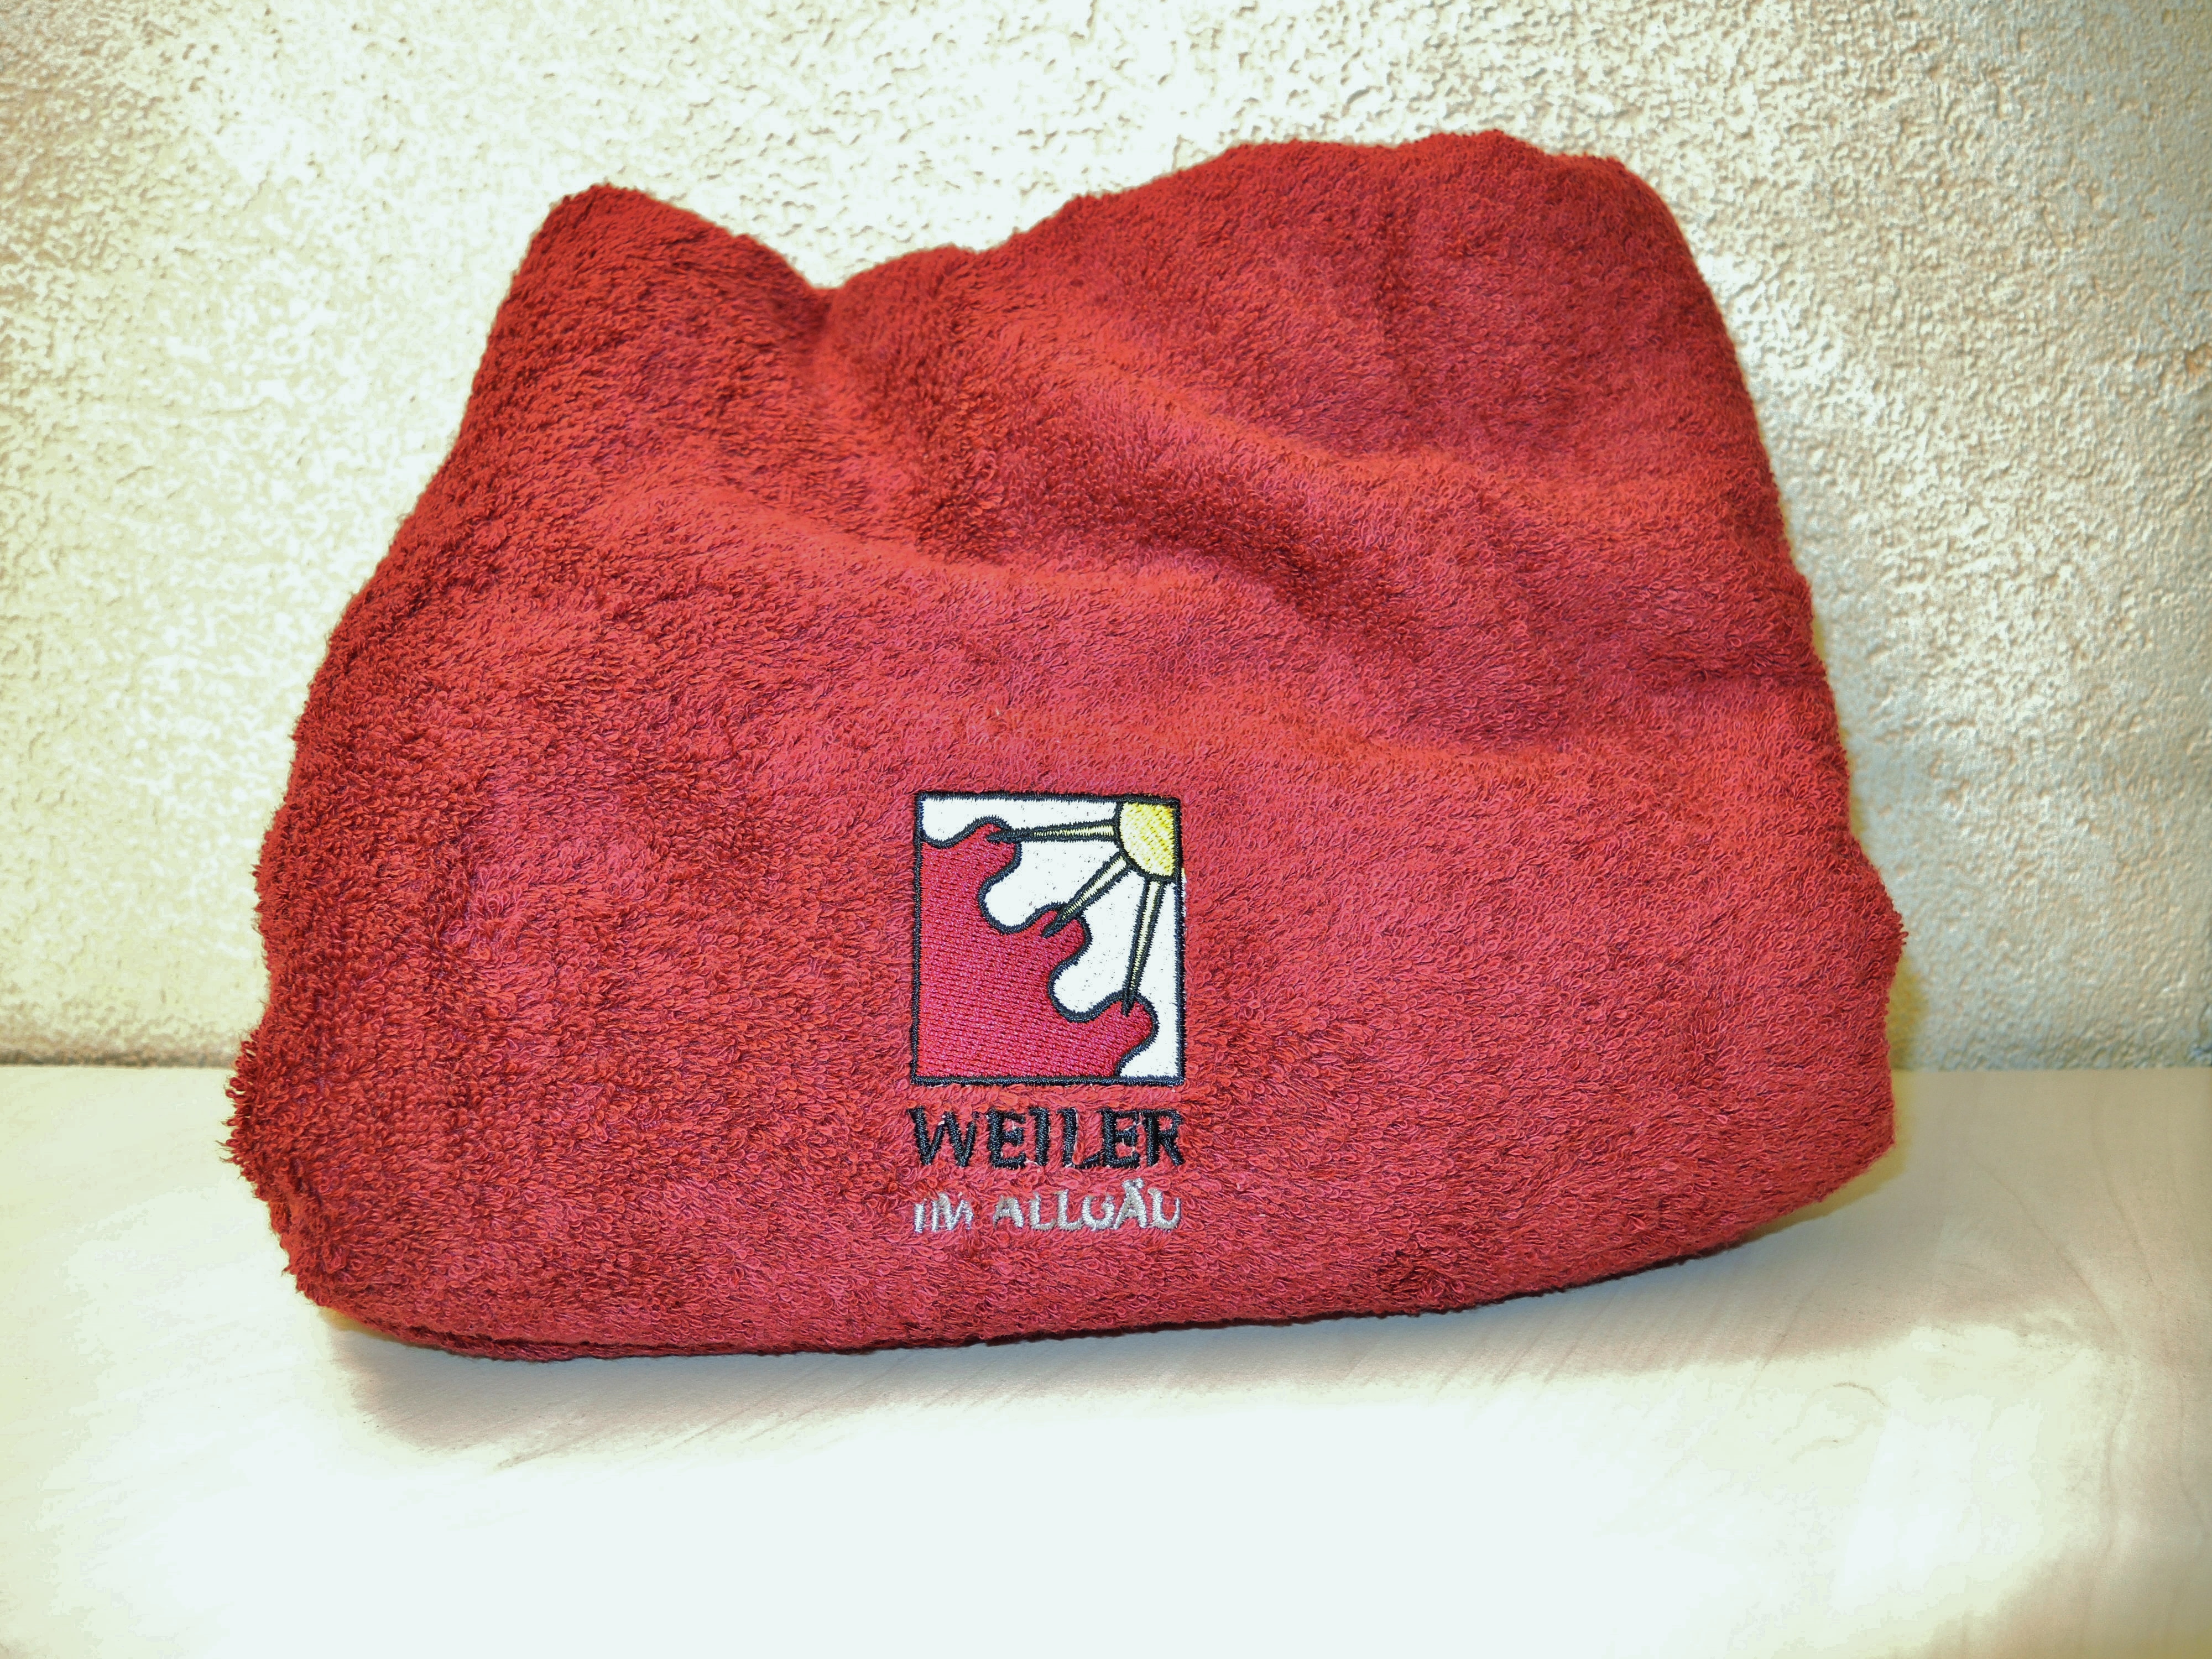  rotes Handtuch mit Weiler-Logo - das Bild wird mit Klick vergrößert 